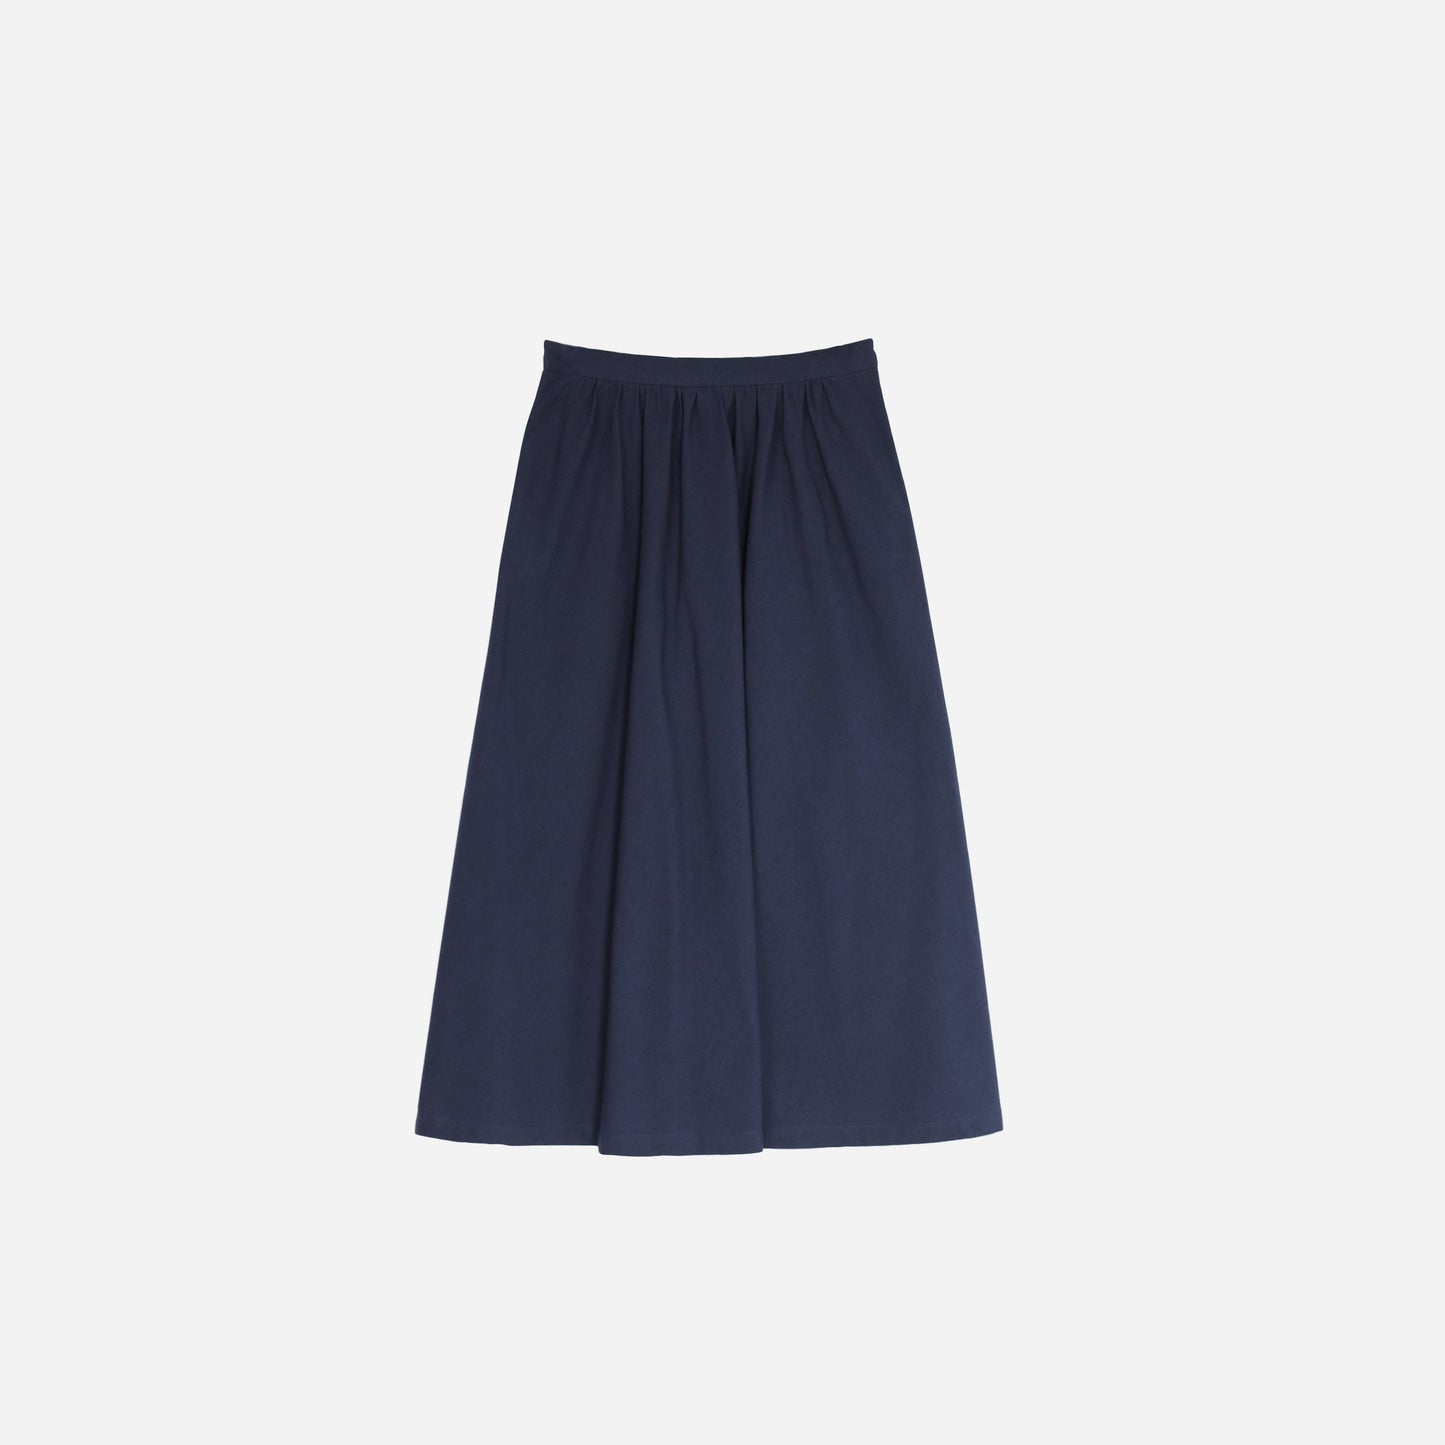 Navy blue skirt